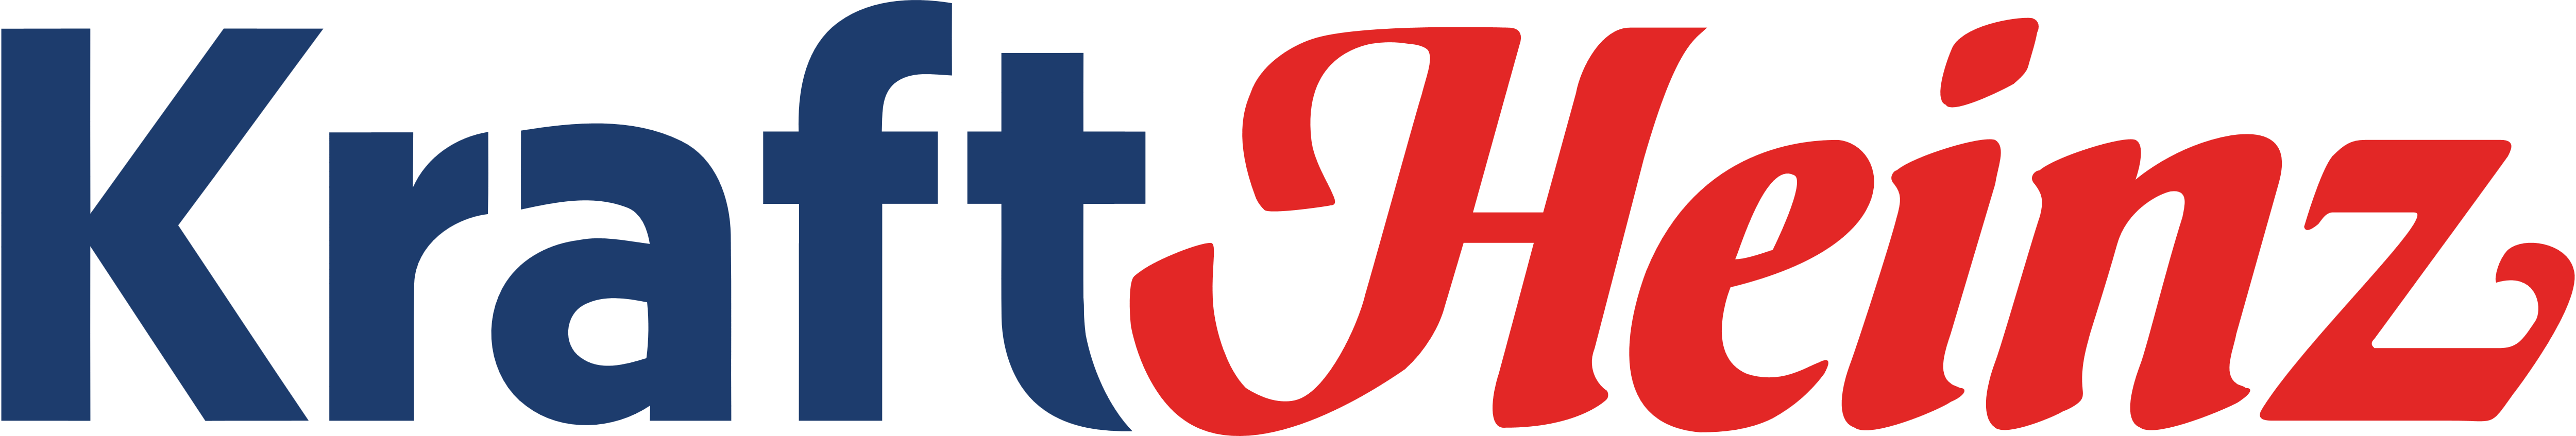 Client 8 logo